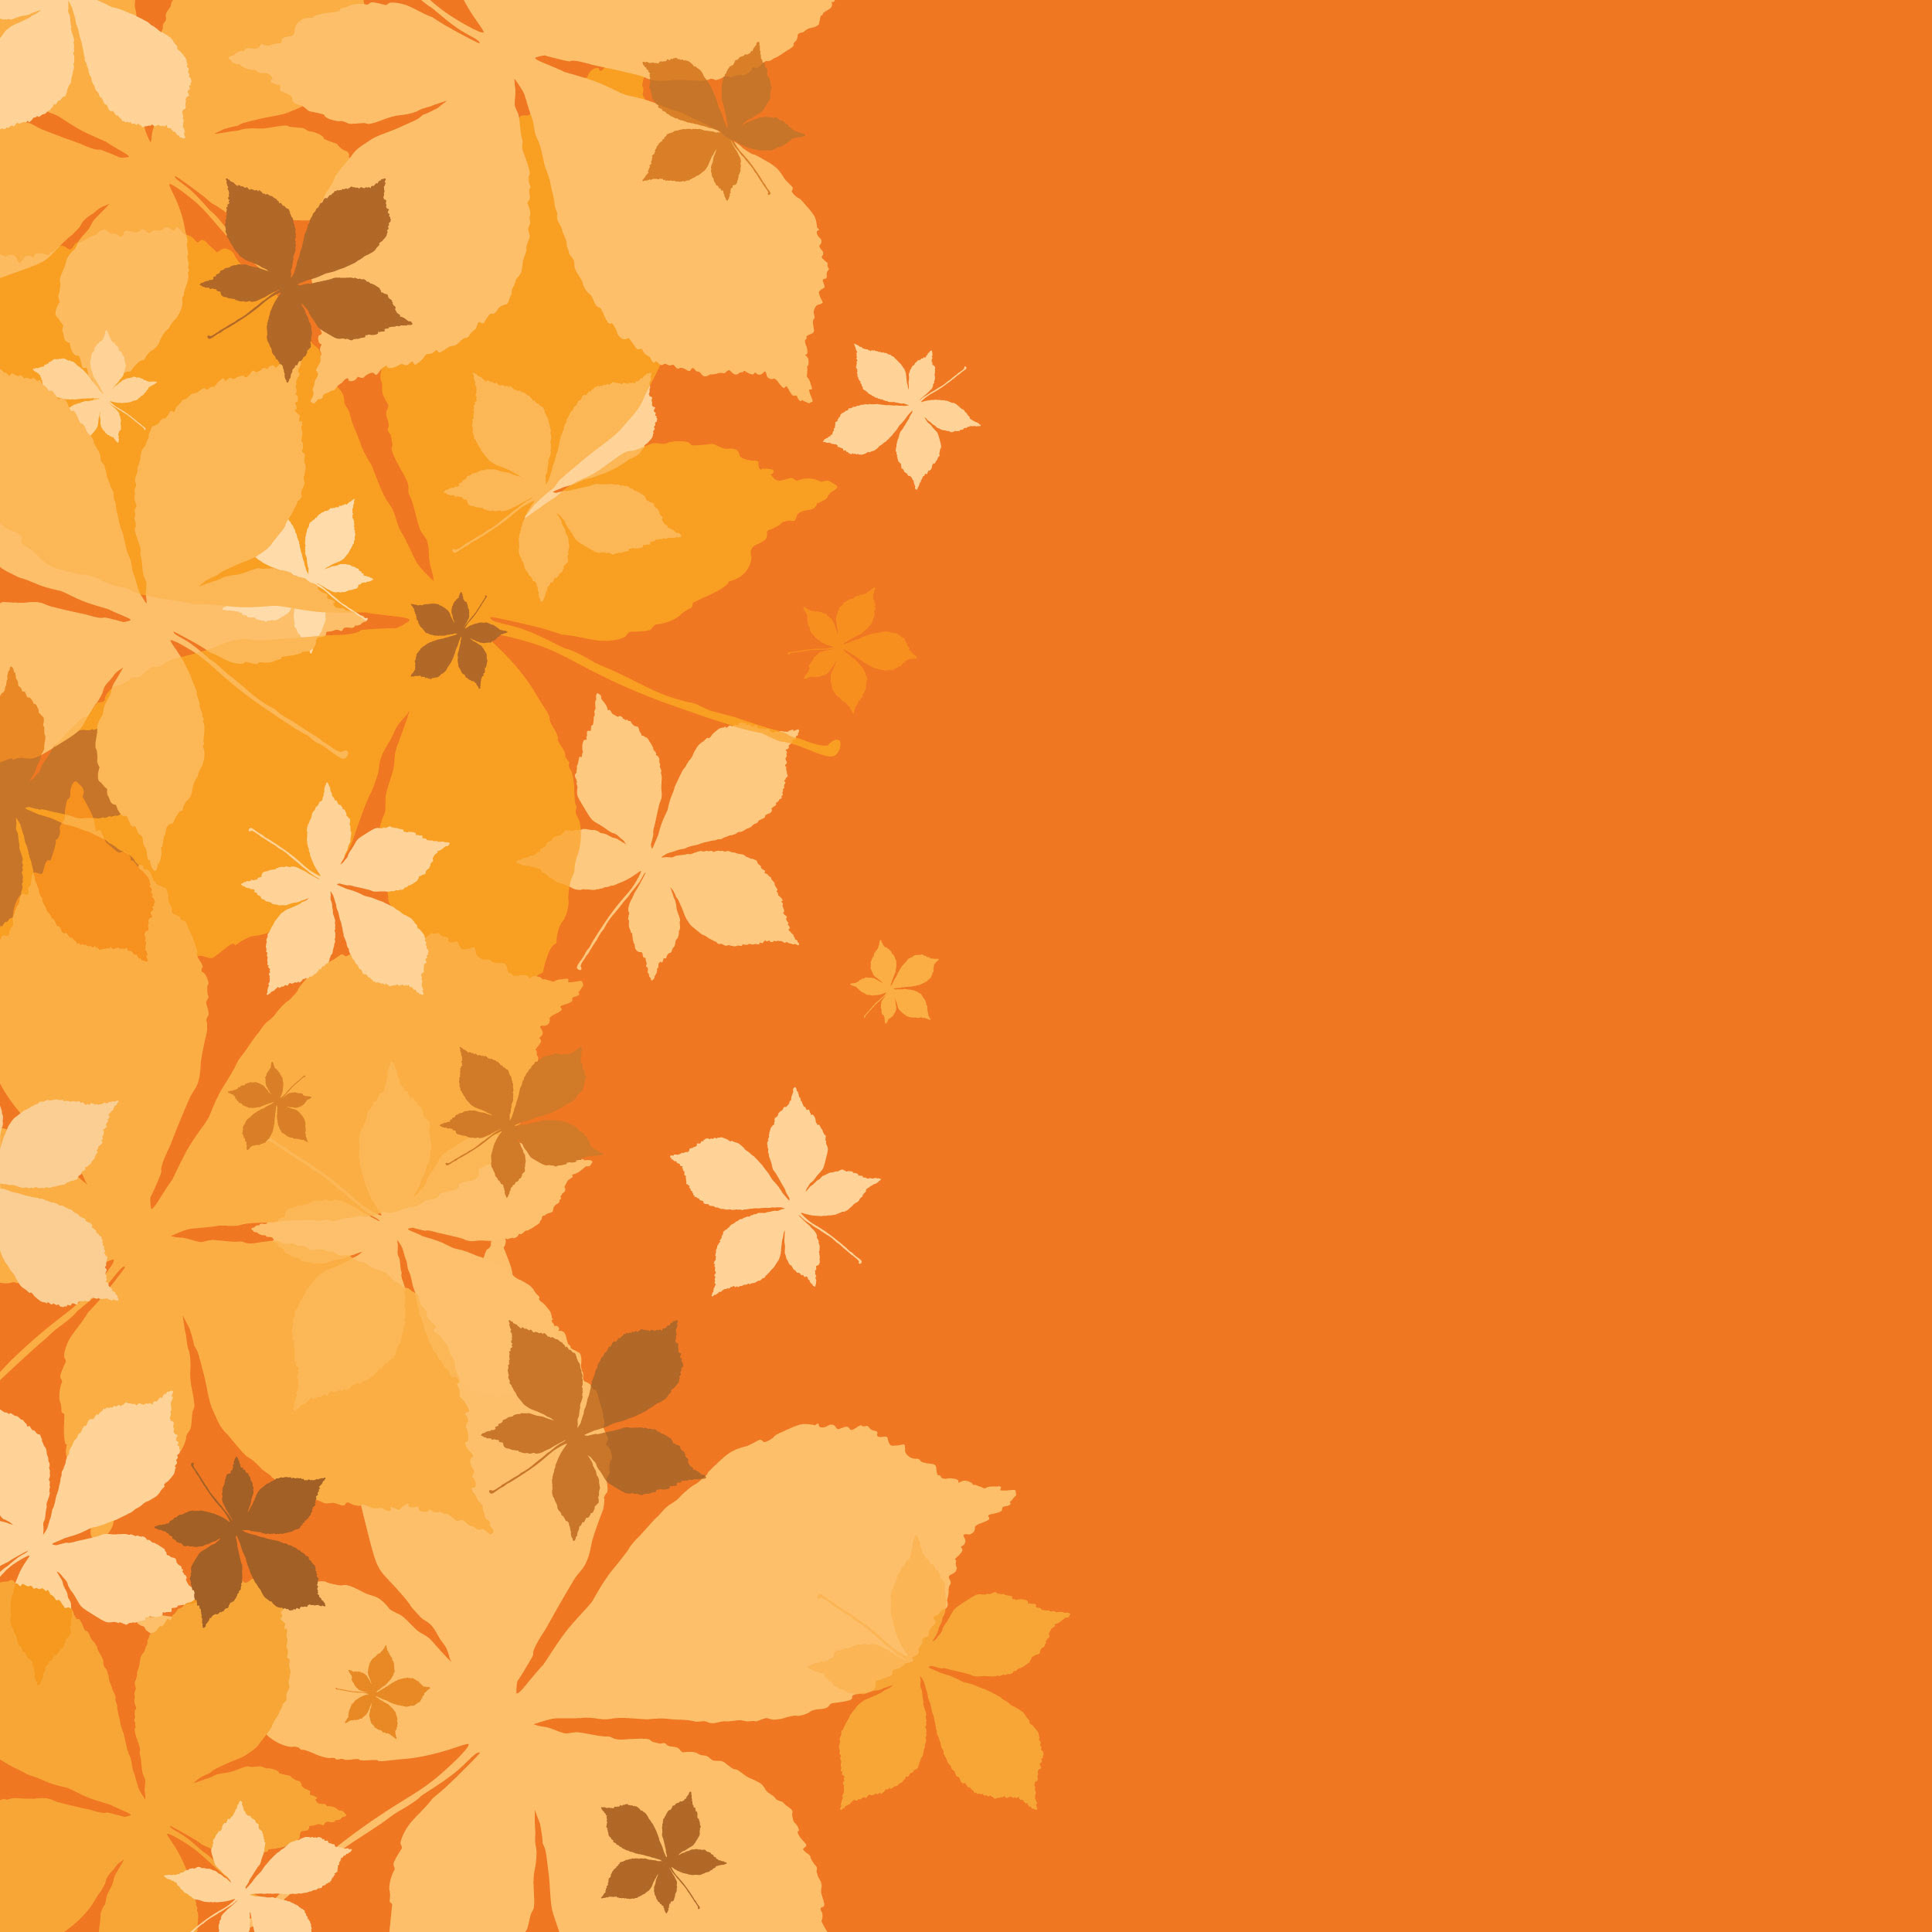 無料イラスト画像 最高かつ最も包括的な背景 おしゃれ かっこいい 秋 イラスト